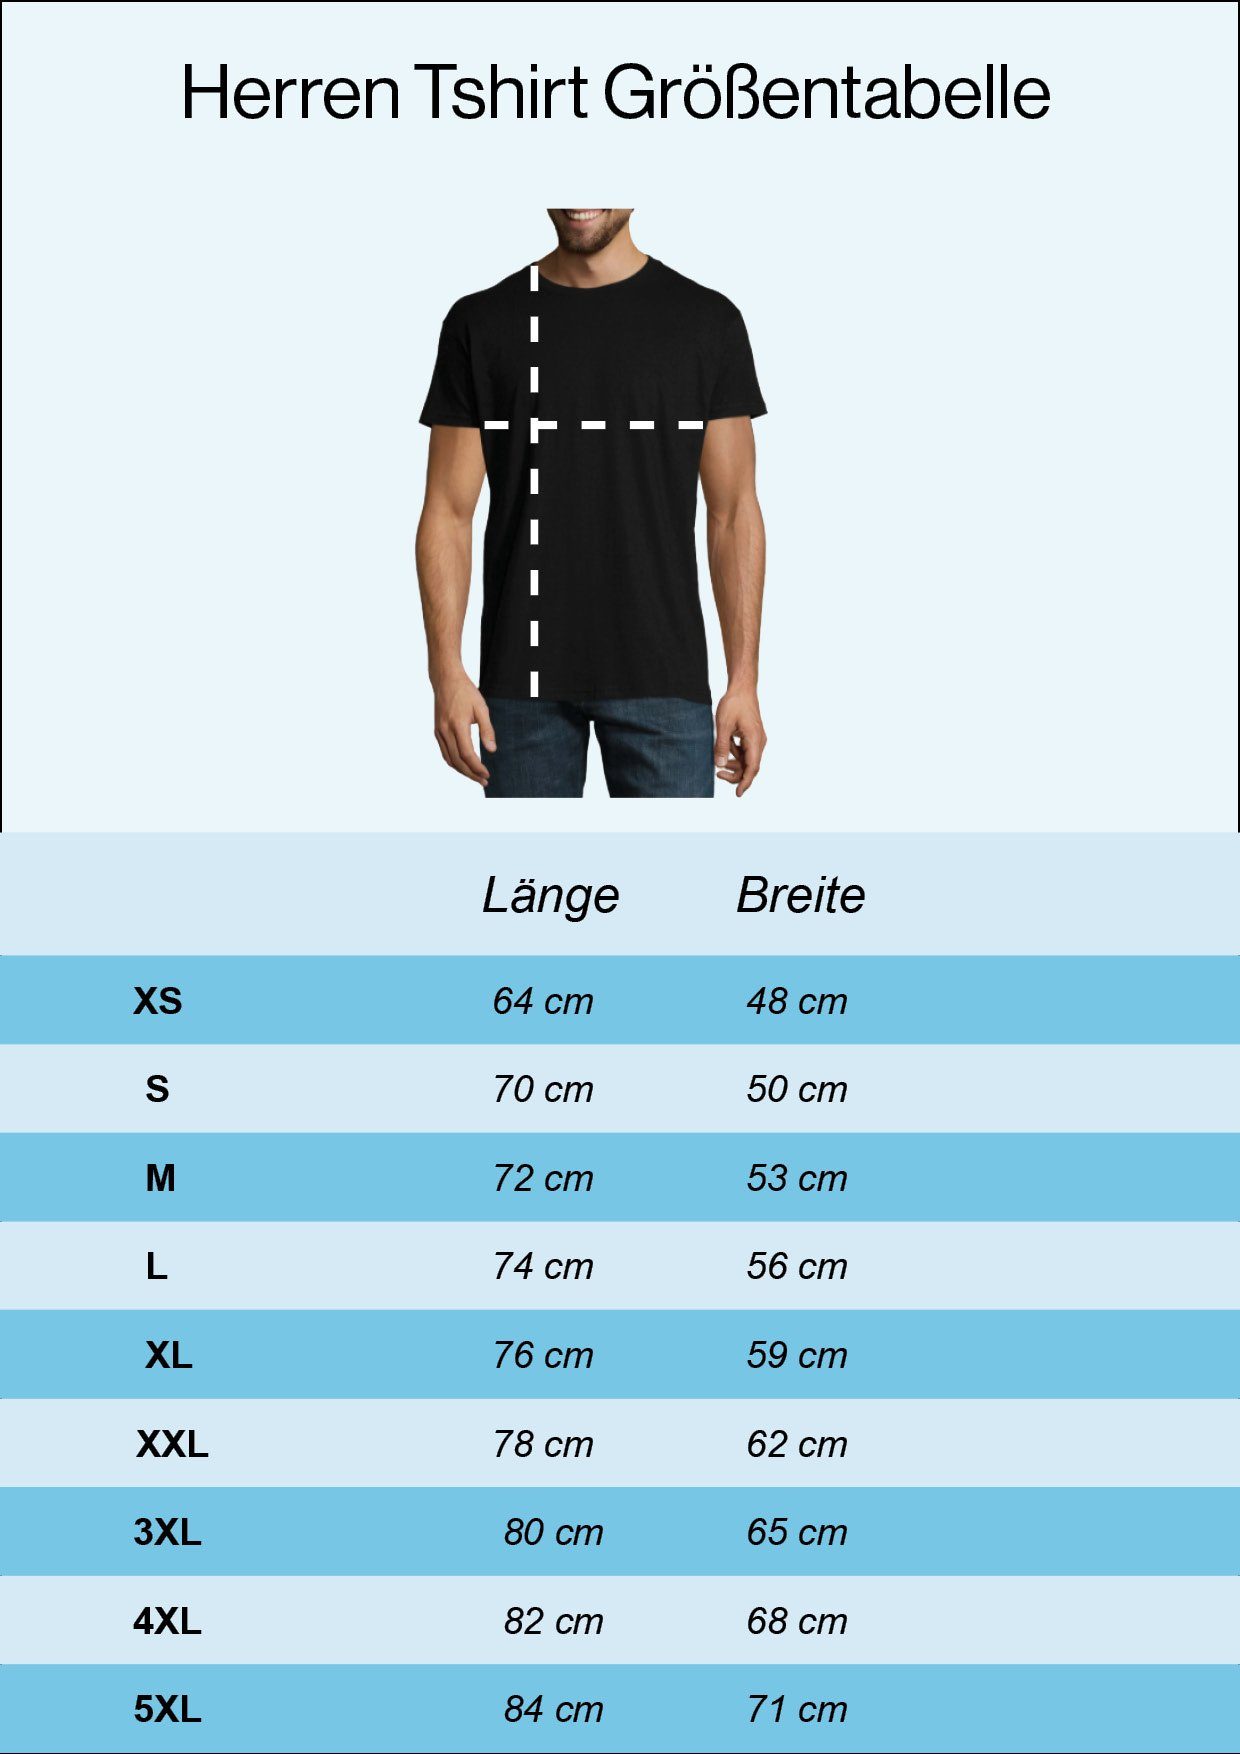 Youth Designz T-Shirt trendigem La France Herren Frontprint mit Allez Shirt Navyblau